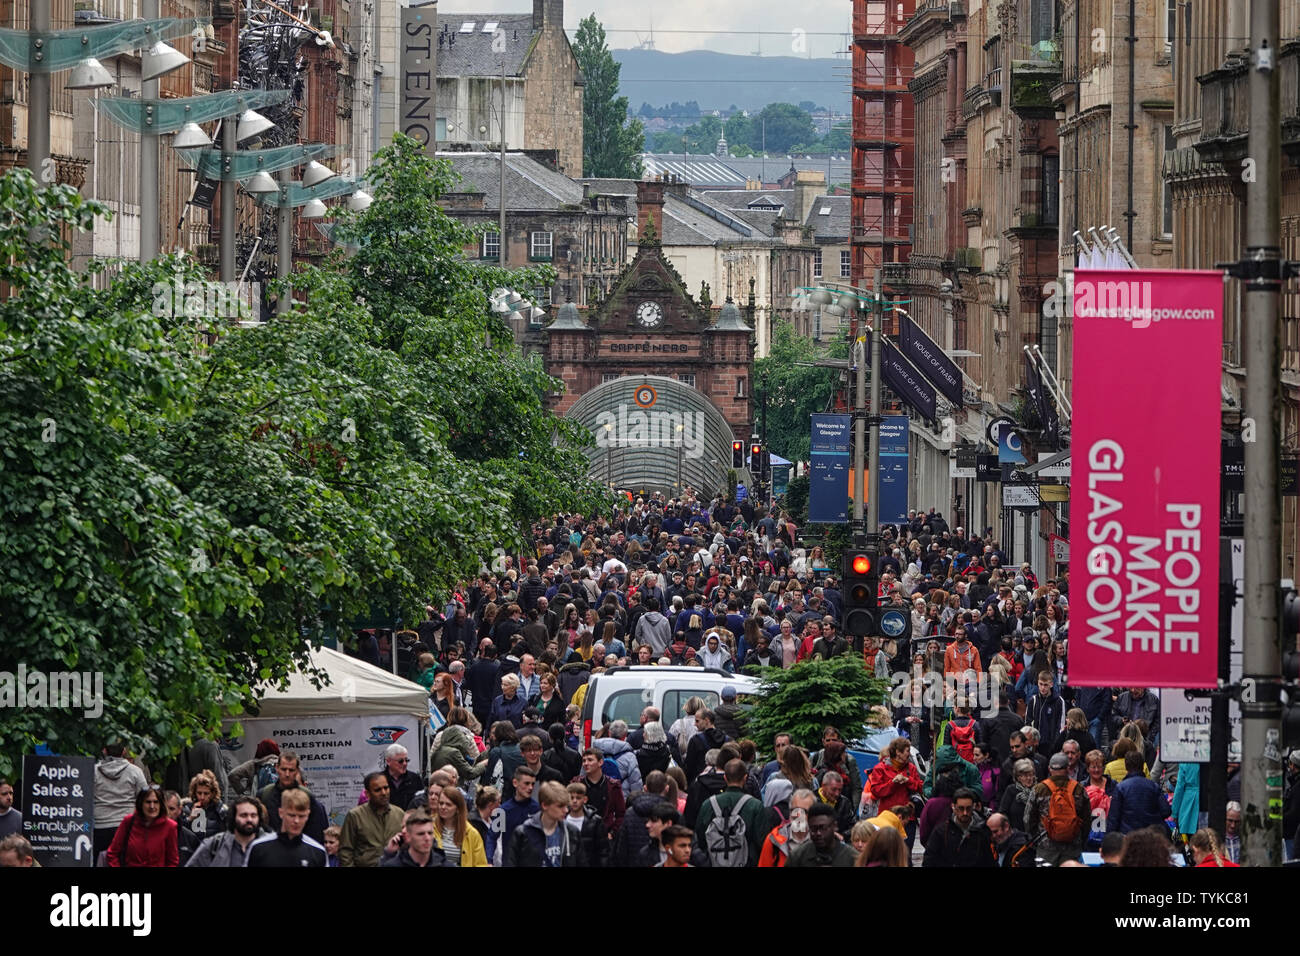 Glasgow, Scozia - Giugno 8, 2019: il famoso quartiere dello shopping della città, Buchanan Street, è mostrato riempito con le persone durante un pomeriggio giorno. Foto Stock